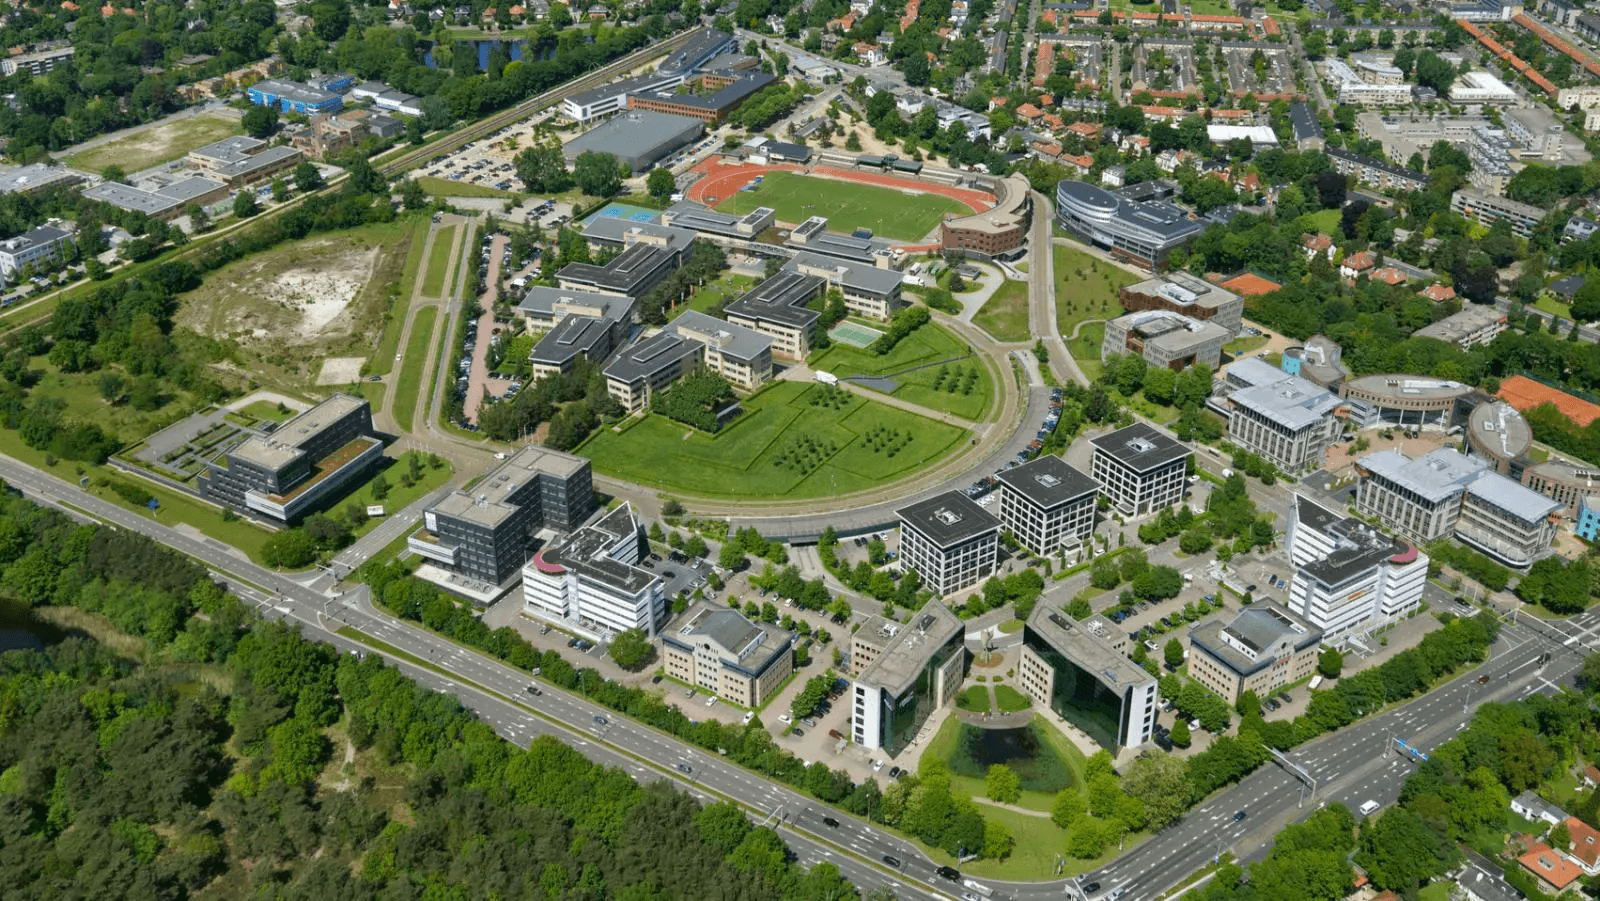 VenhoevenCS maakt voor doorontwikkeling Arenapark Hilversum - architectenweb.nl